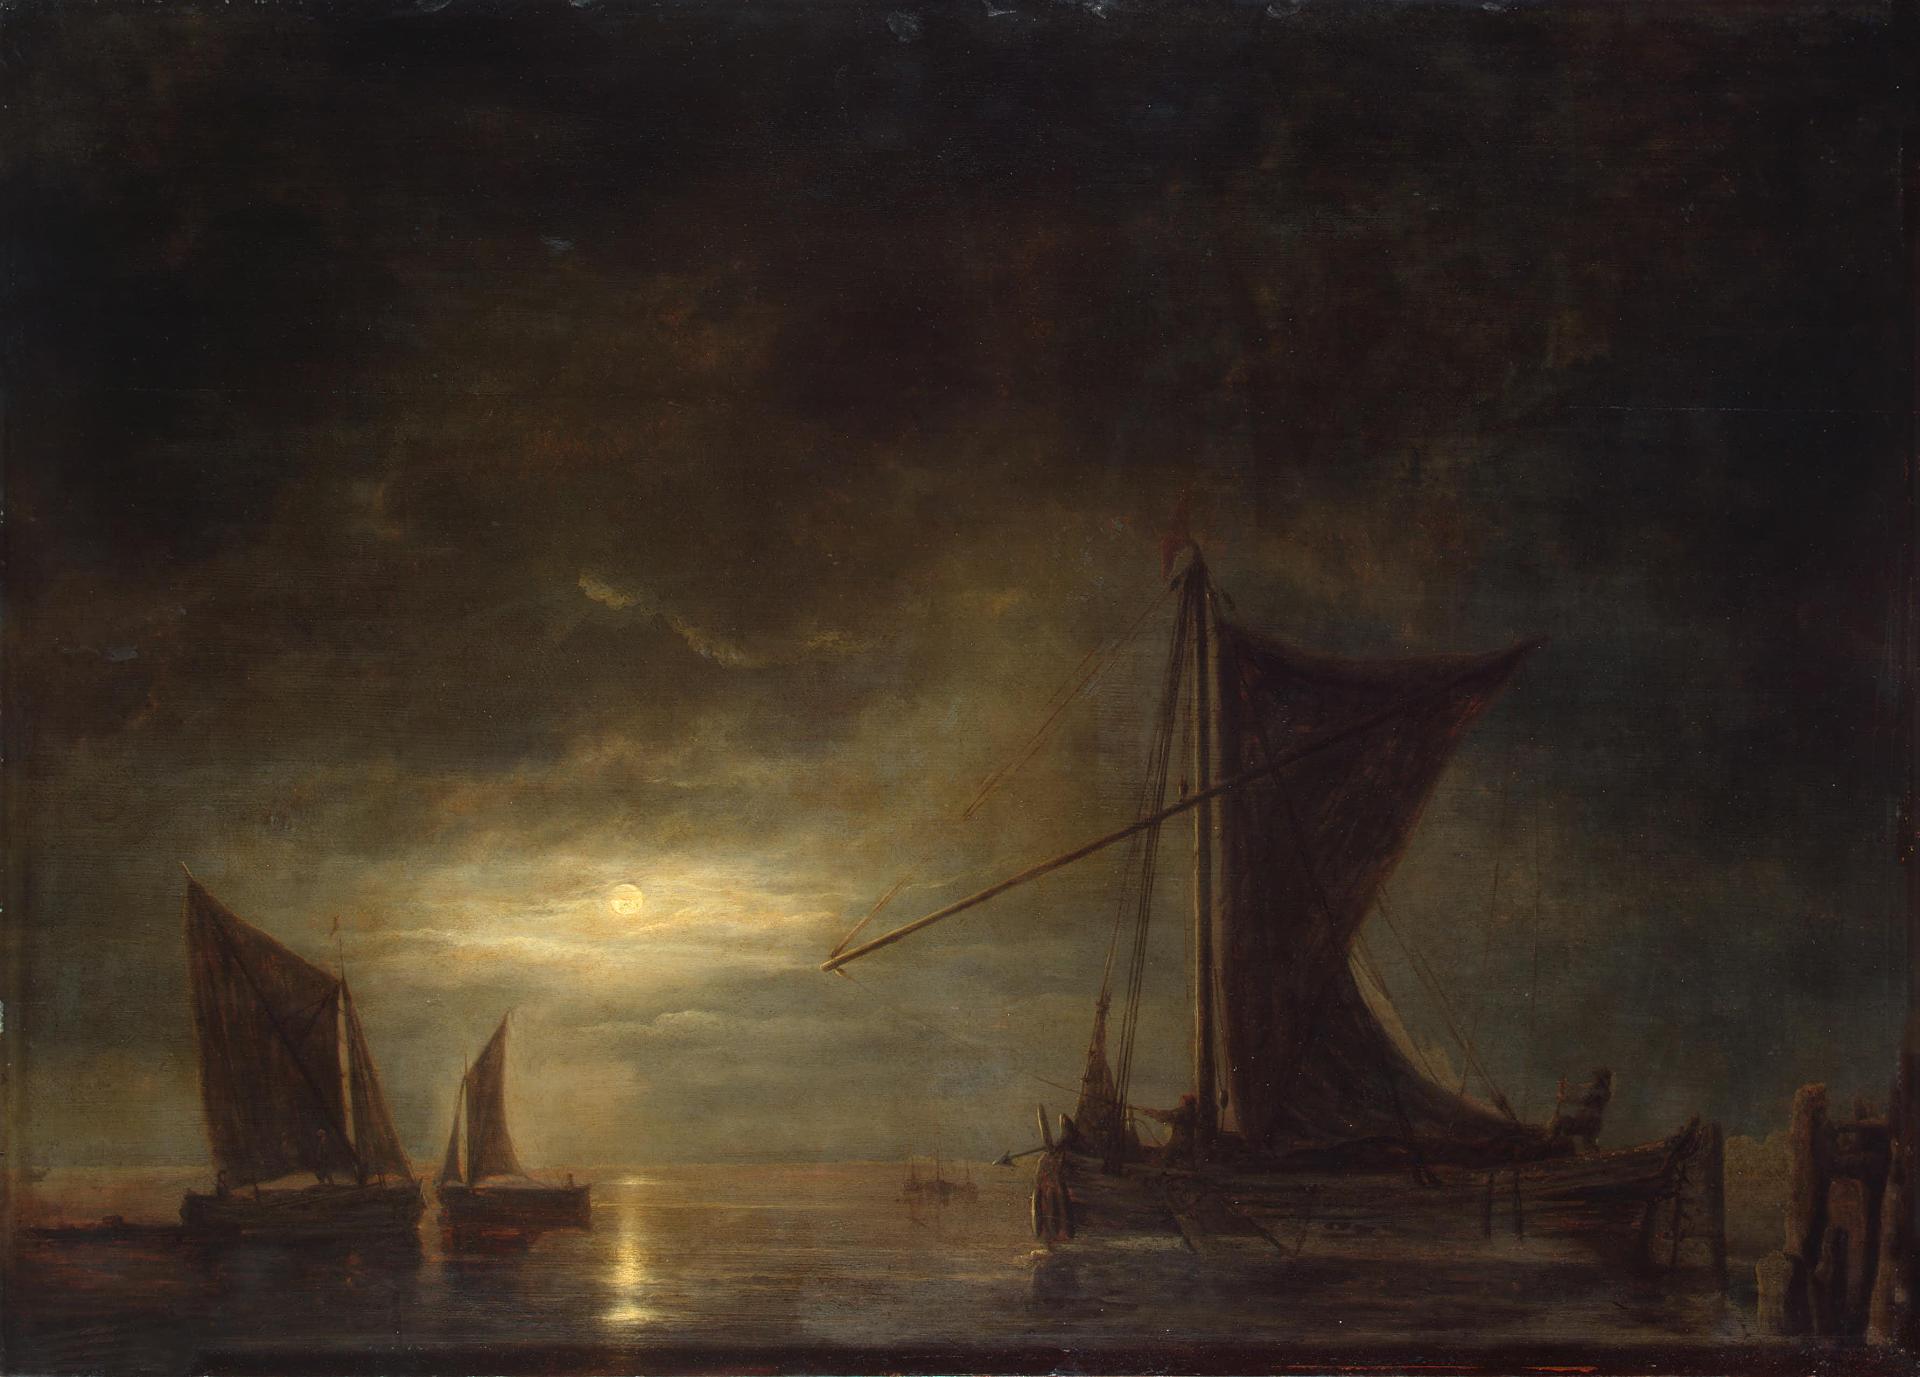 Альберт (Альбрехт) Кейп. "Море при лунном освещении". Около 1648. Эрмитаж, Санкт-Петербург.